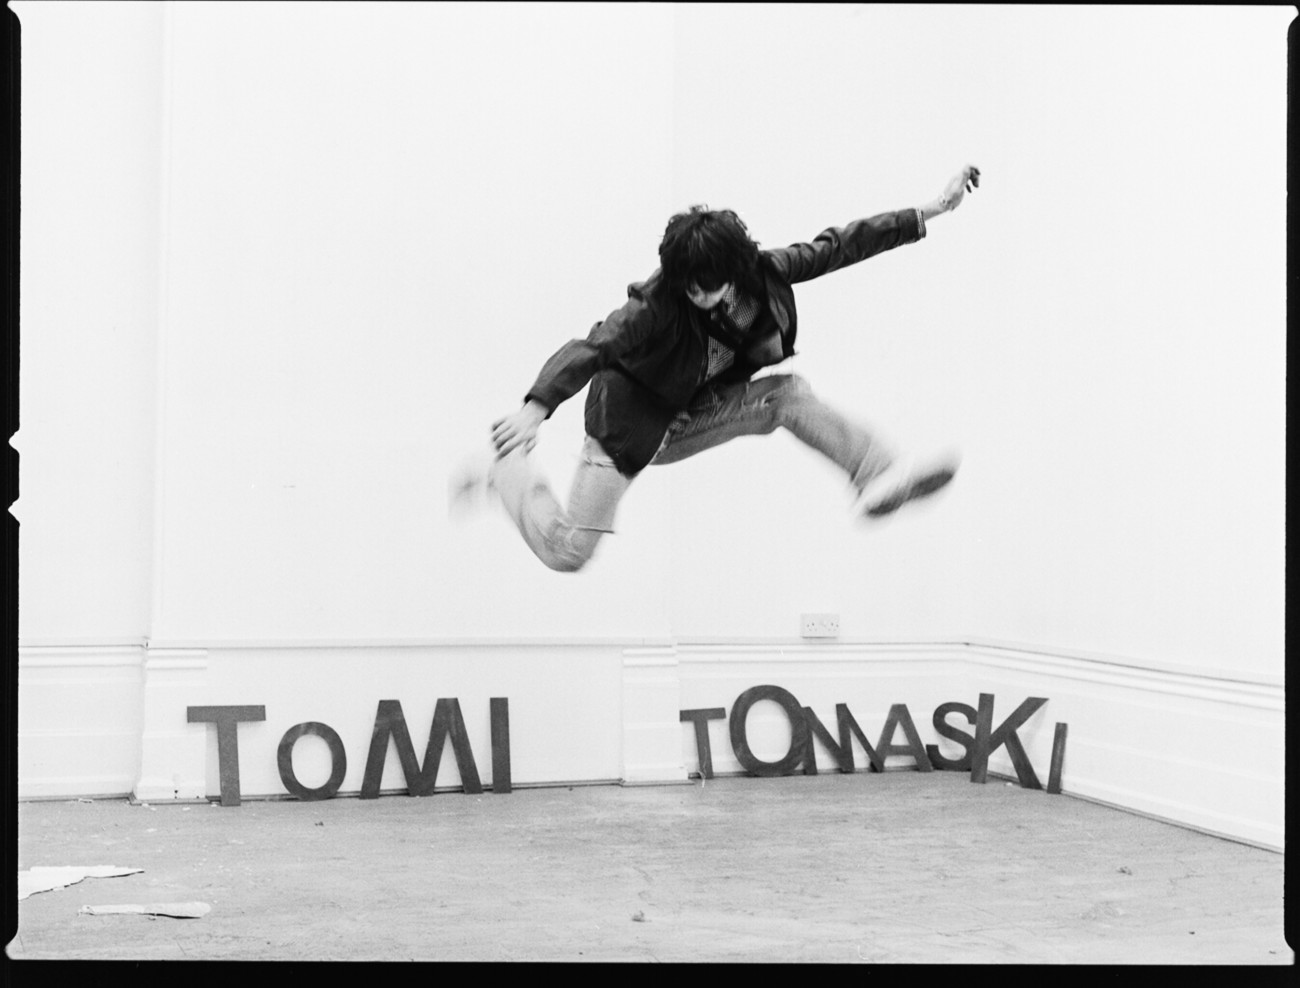 Tomi Tomaski